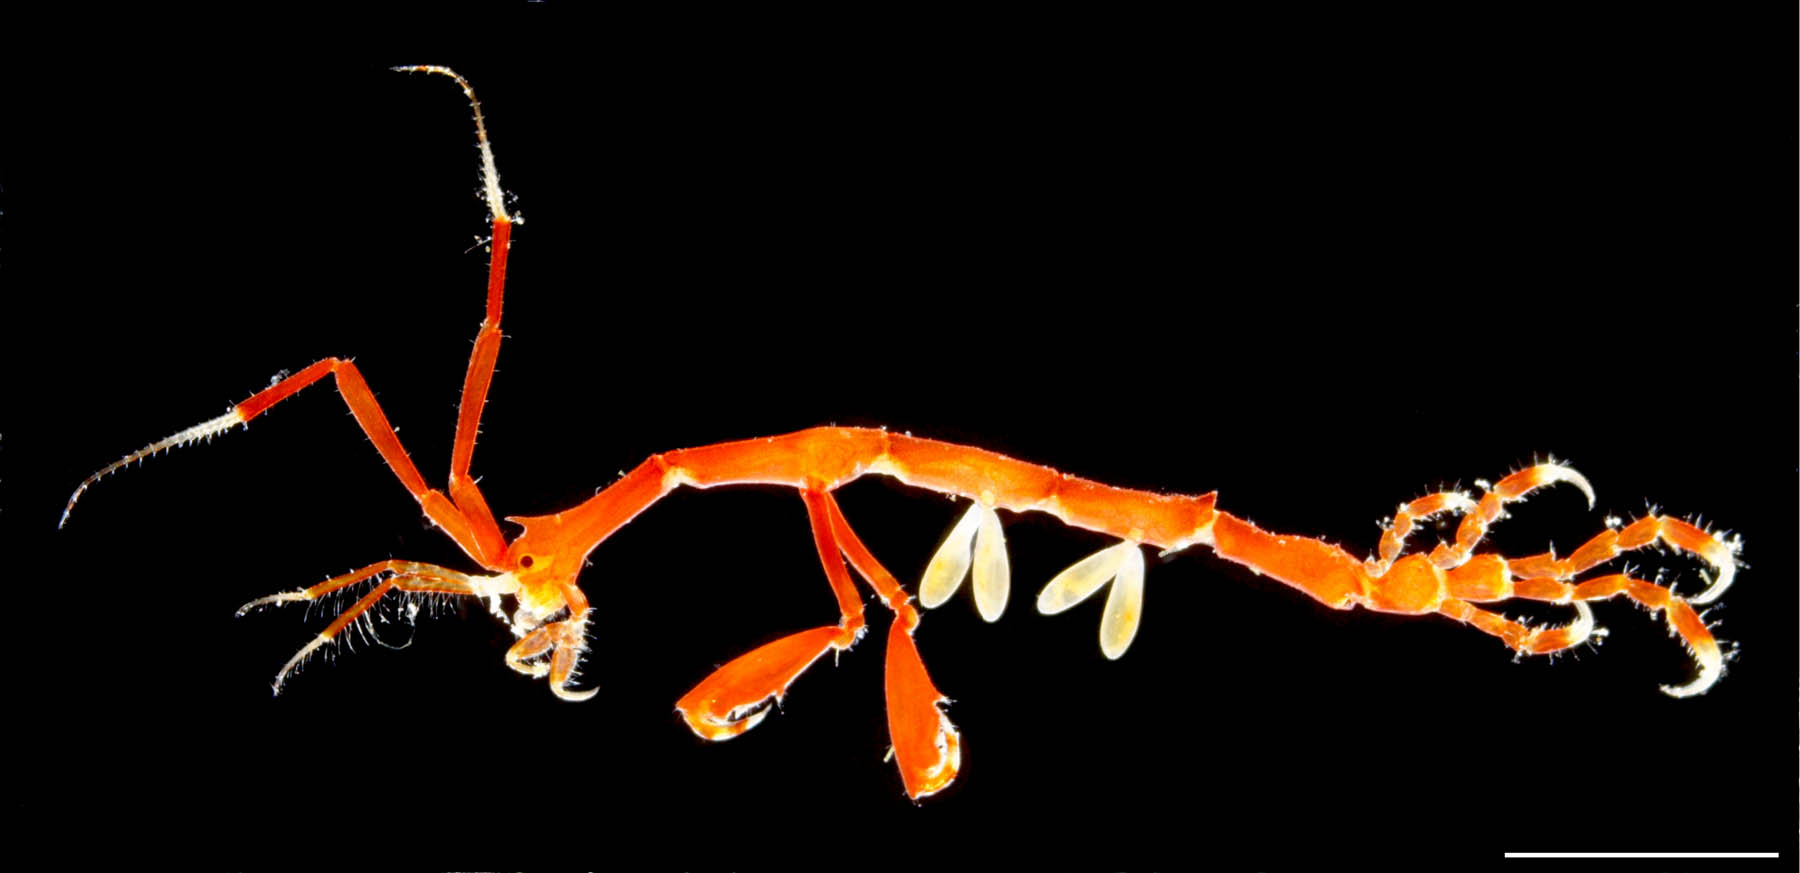 トゲワレカラ(Caprella scaura diceros)の画像